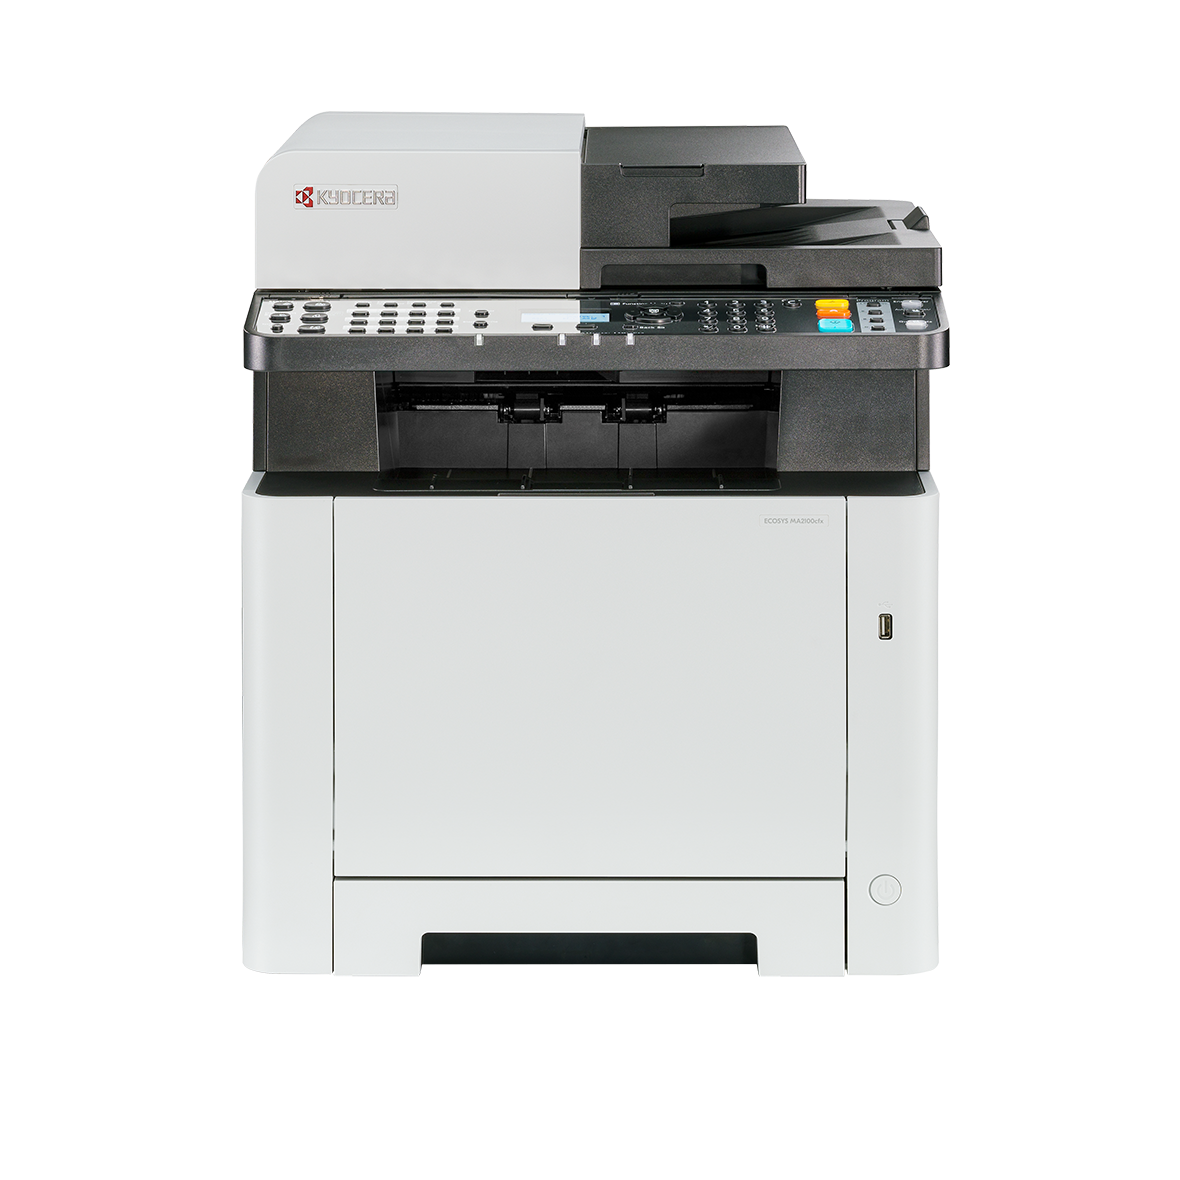 Kyocera ECOSYS MA2100cfx (A4, farebná tlač/kopírovanie/skenovanie/fax, duplex, ADF, USB, LAN, 21ppm)